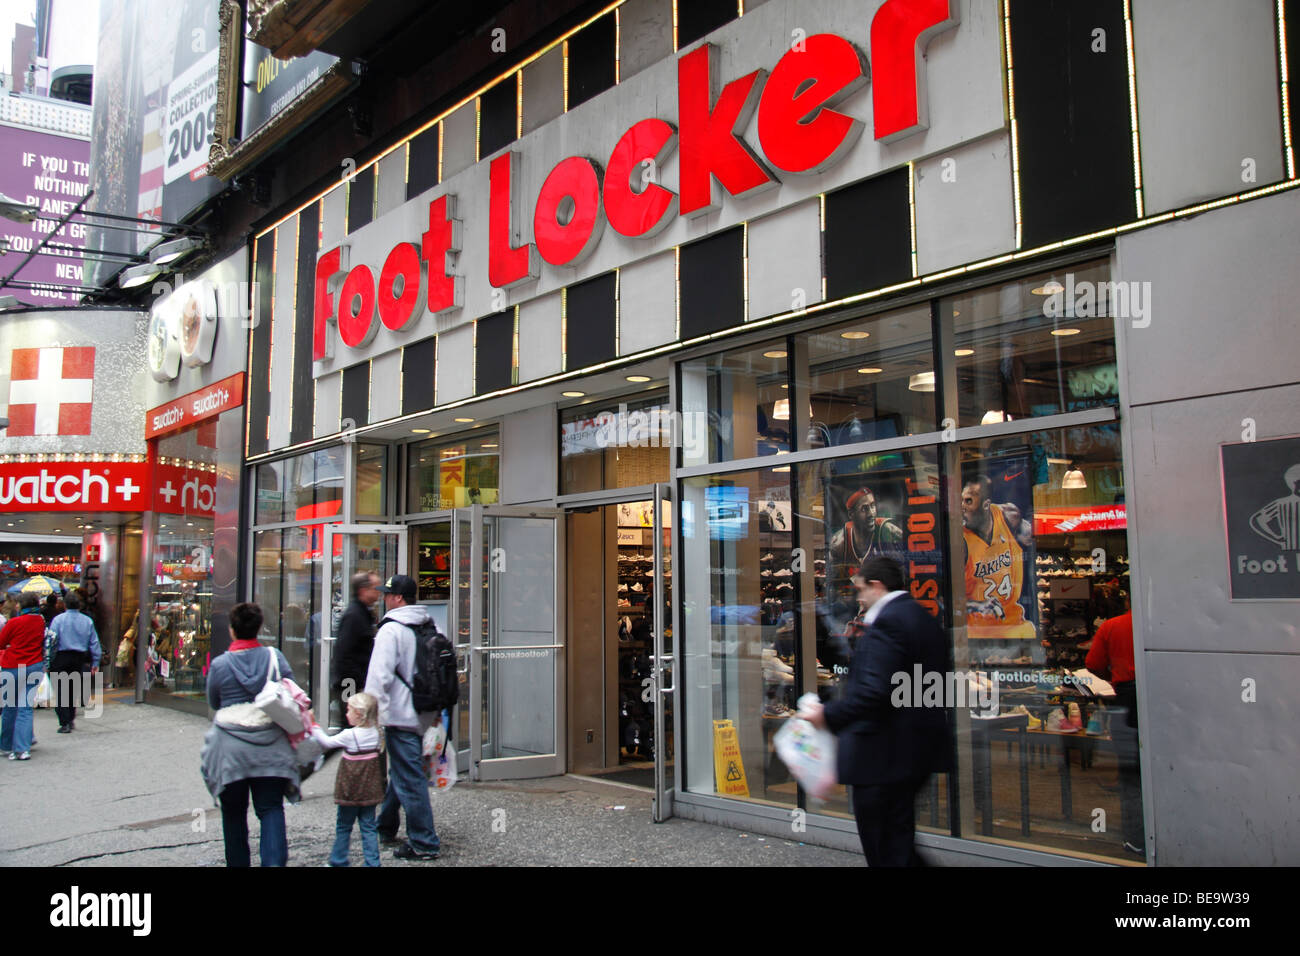 New York Foot Lockers Closing?